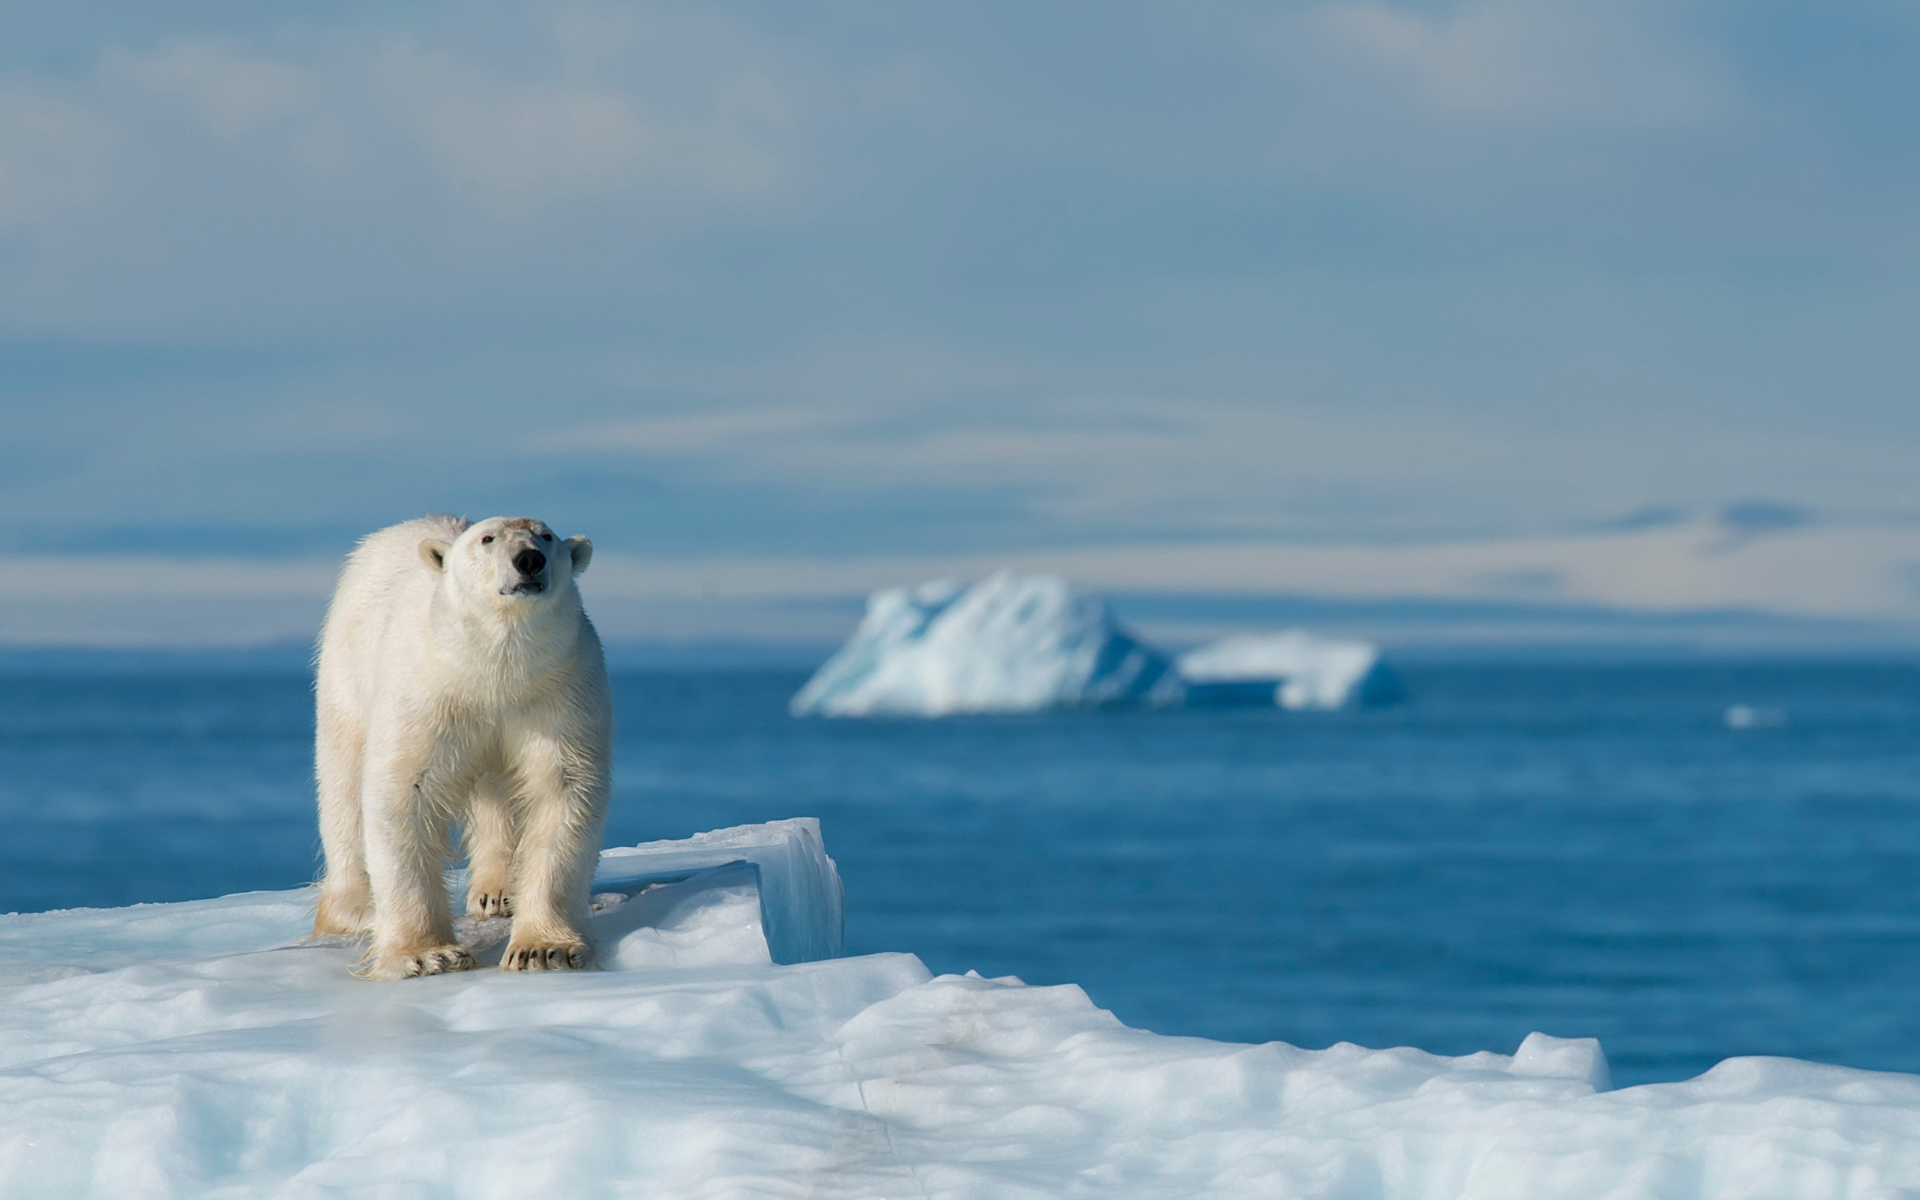 Un oso polar caminado sobre una superficie de hielo. Imagen: webguzs / Getty Images Pro